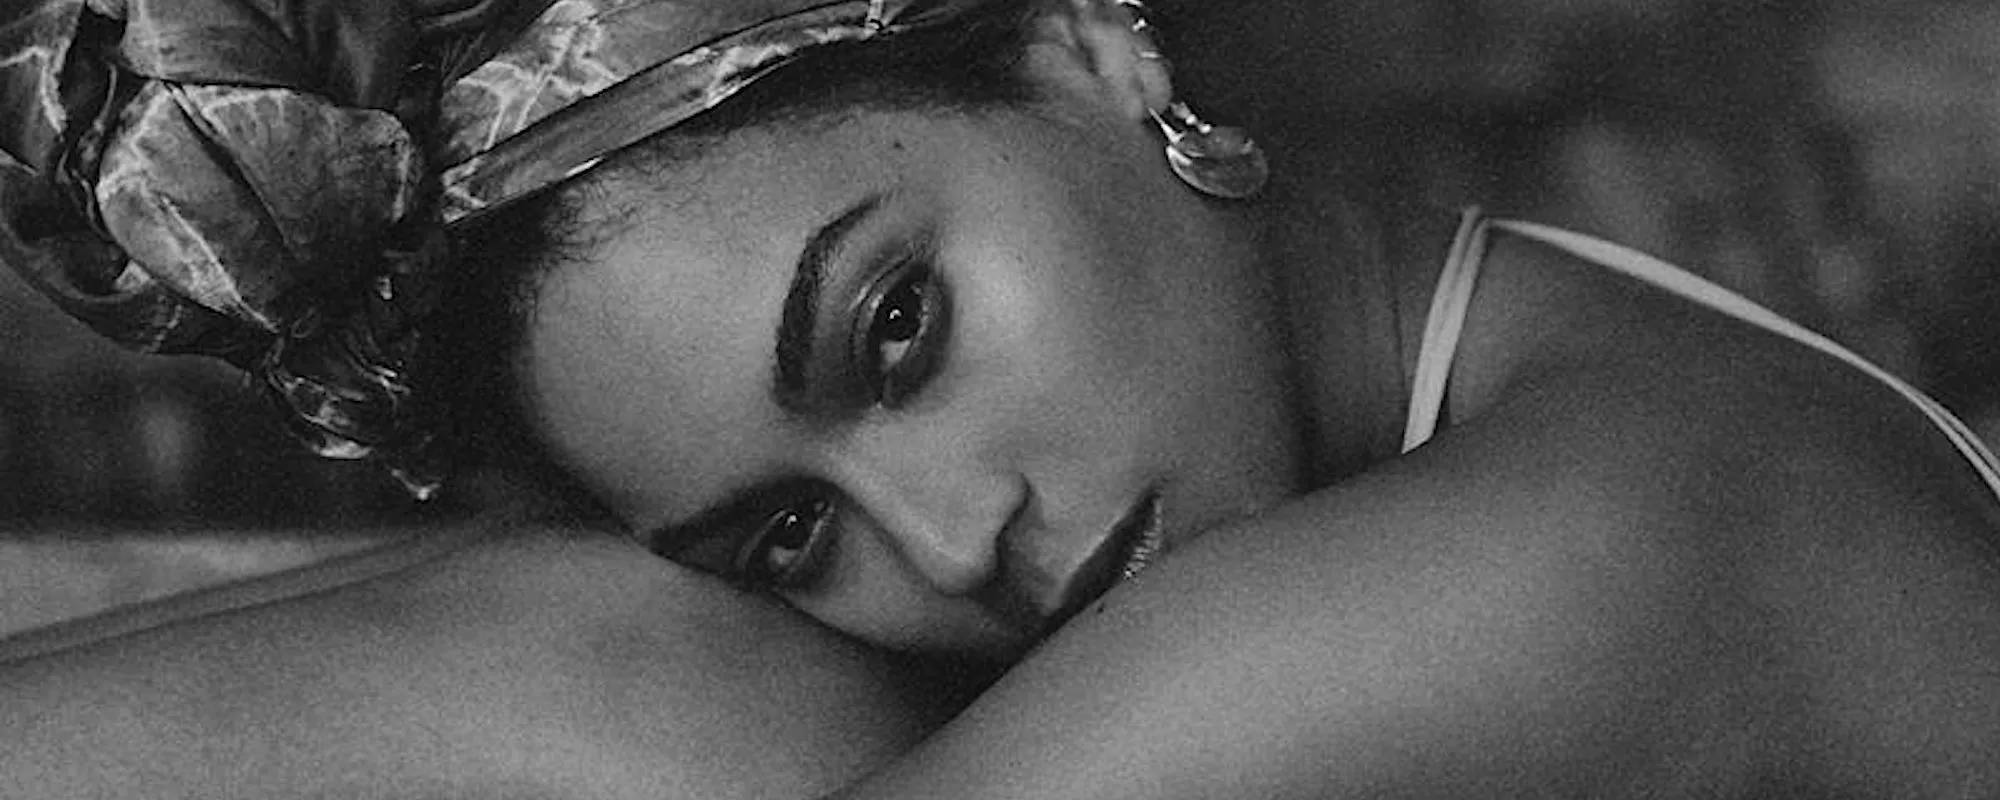 Beyoncé Returns with Upcoming Seventh Album ‘Renaissance’